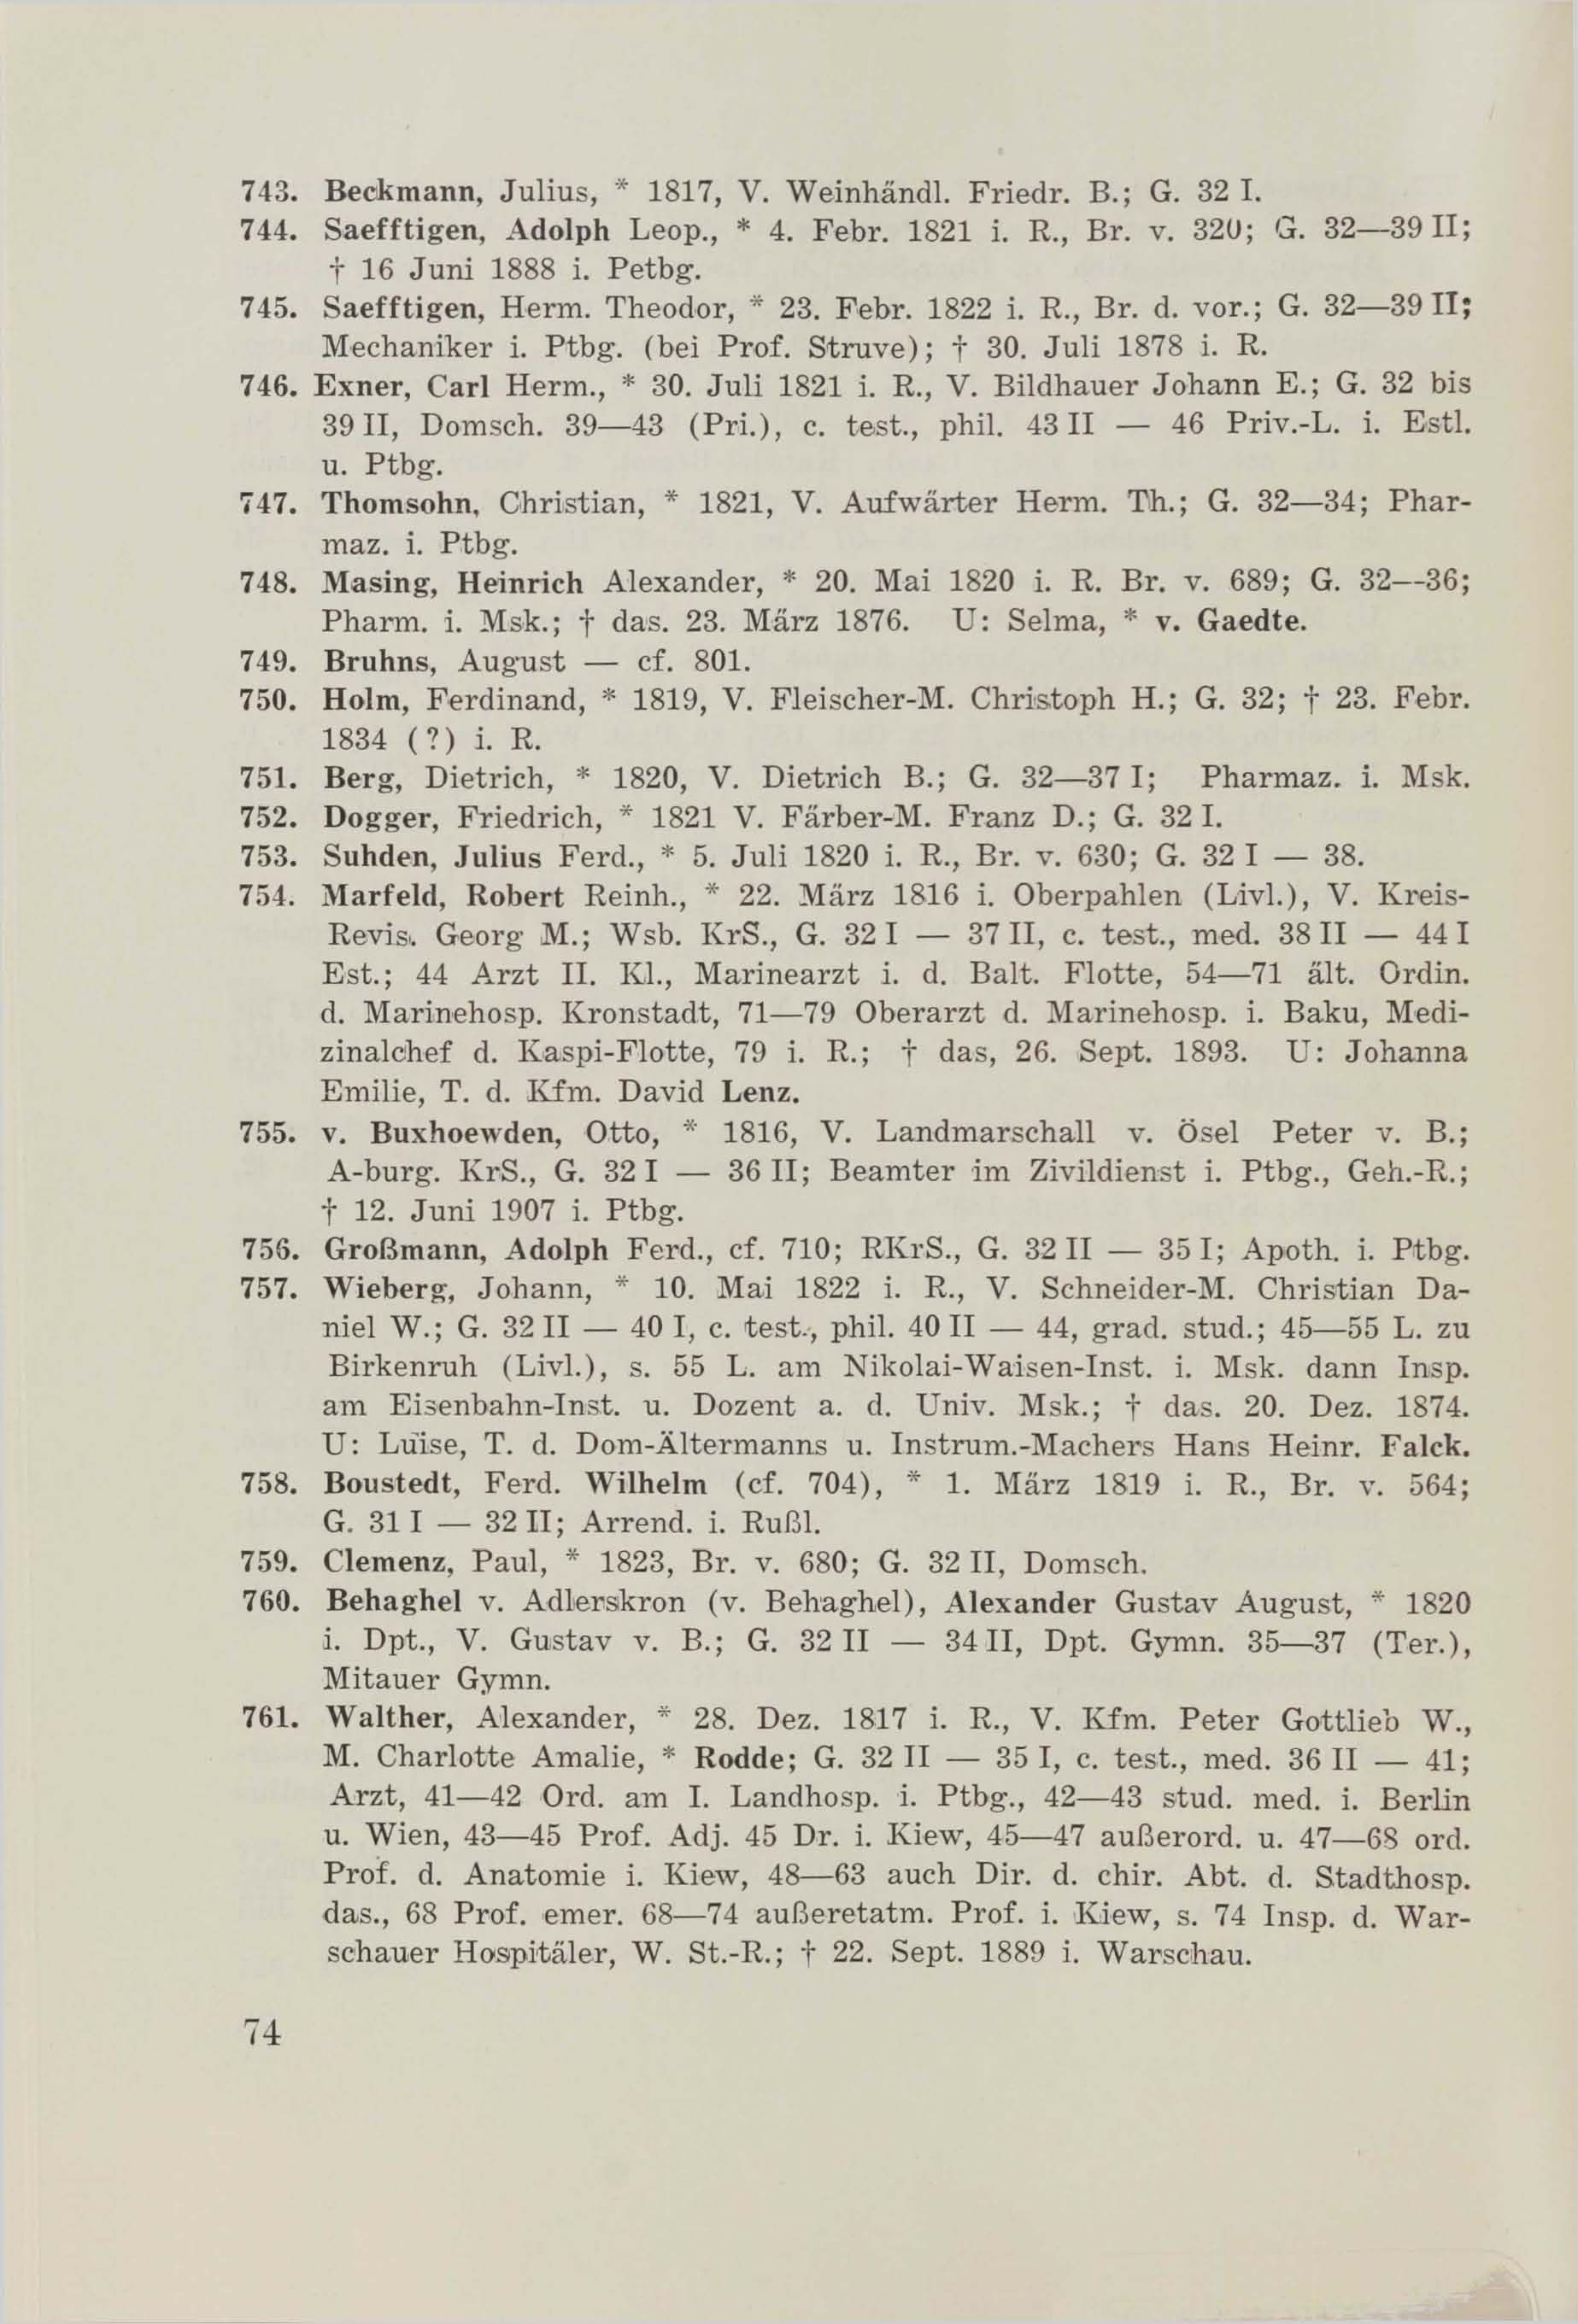 Schüler-Verzeichnis des Revalschen Gouvernements-Gymnasiums 1805–1890 (1931) | 84. (74) Main body of text